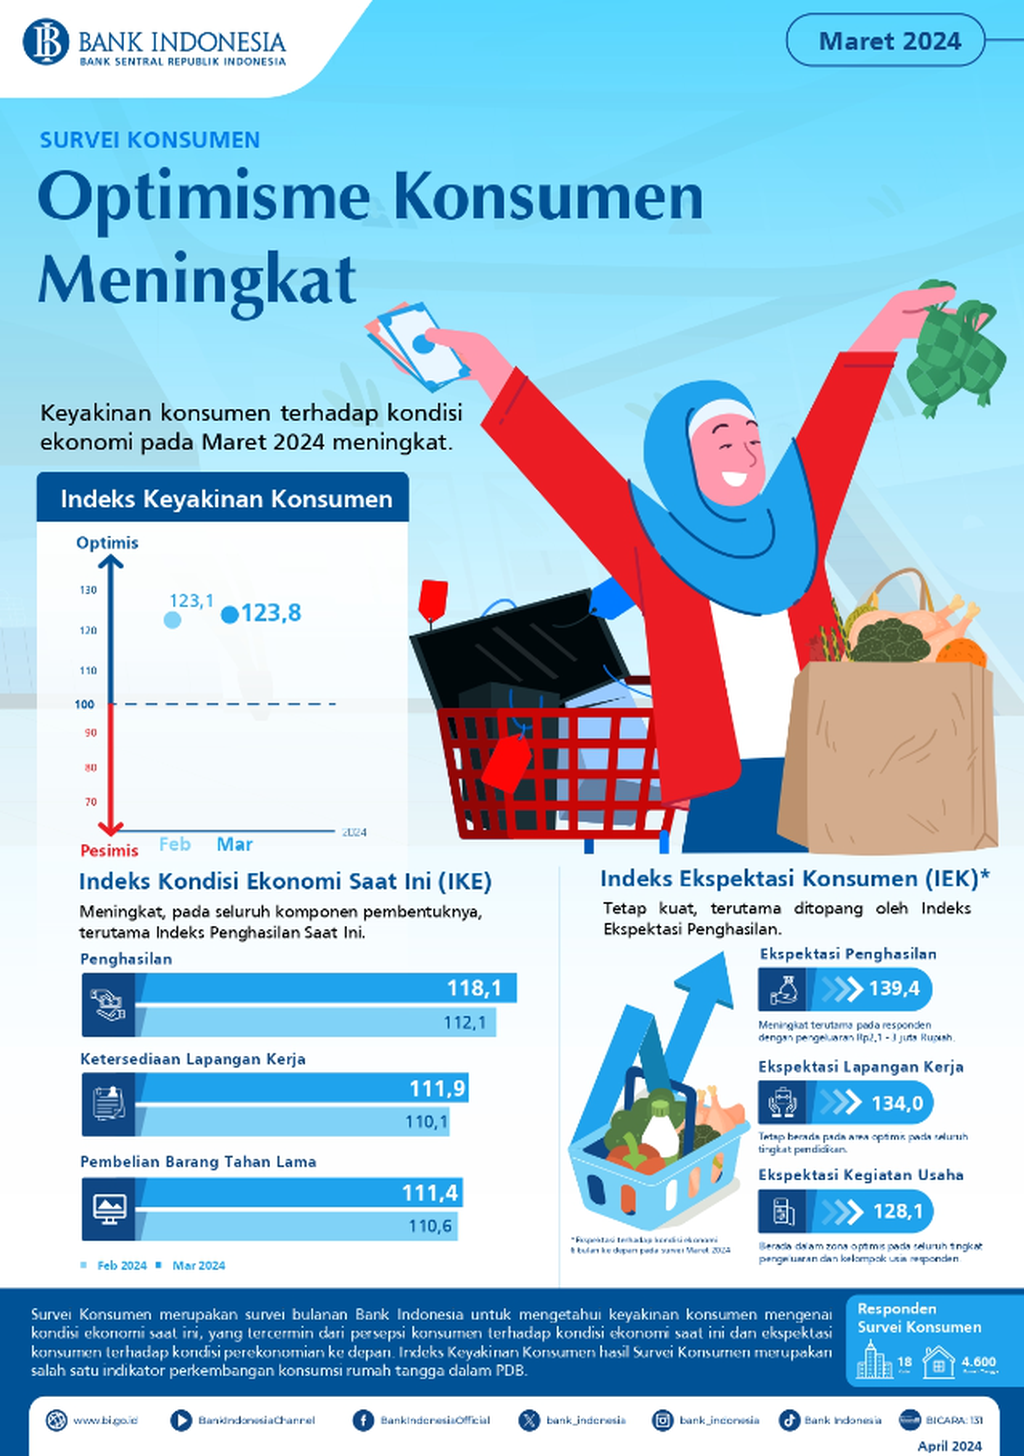 Infografik menunjukkan hasil Survei Konsumen Bank Indonesia pada Maret 2024. Survei tersebut mengindikasikan peningkatan keyakinan konsumen pada Maret 2024 sebesar 123,8 basis poin (sumber: Bank Indonesia).